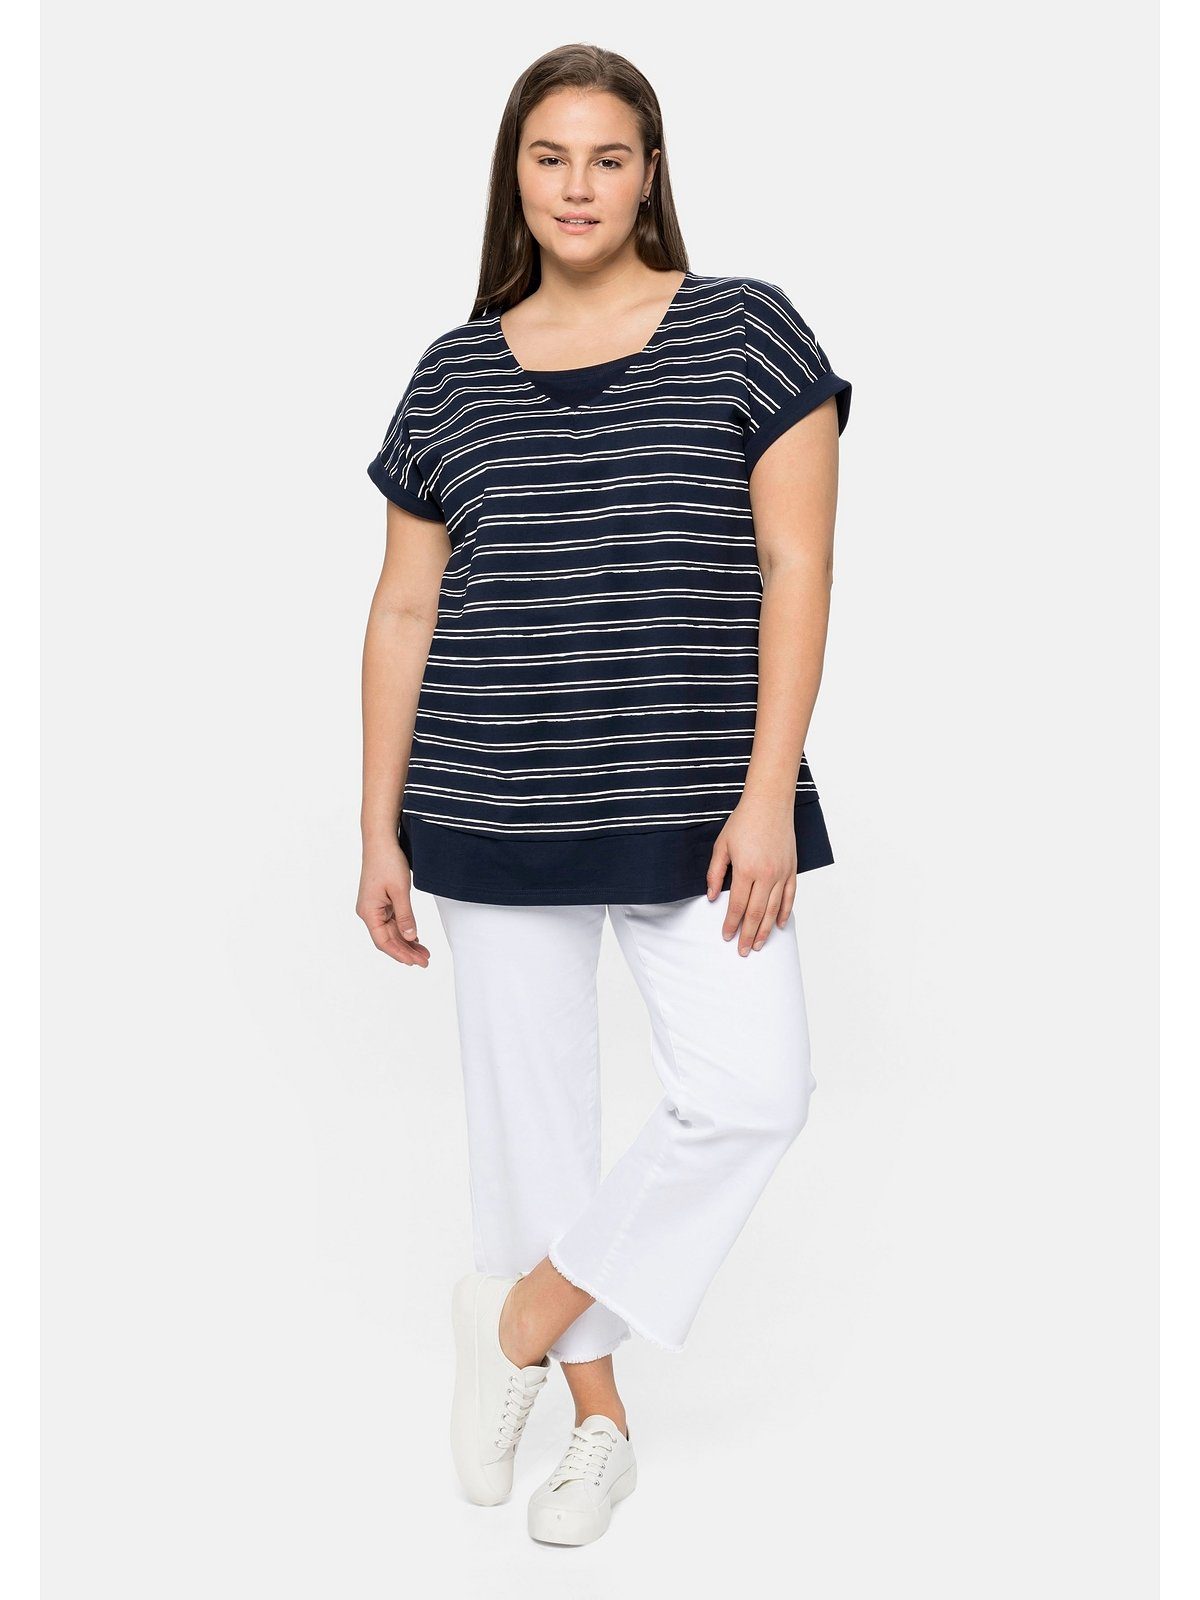 Sheego T-Shirt Große reiner im Größen aus Baumwolle marine-weiß Lagenlook